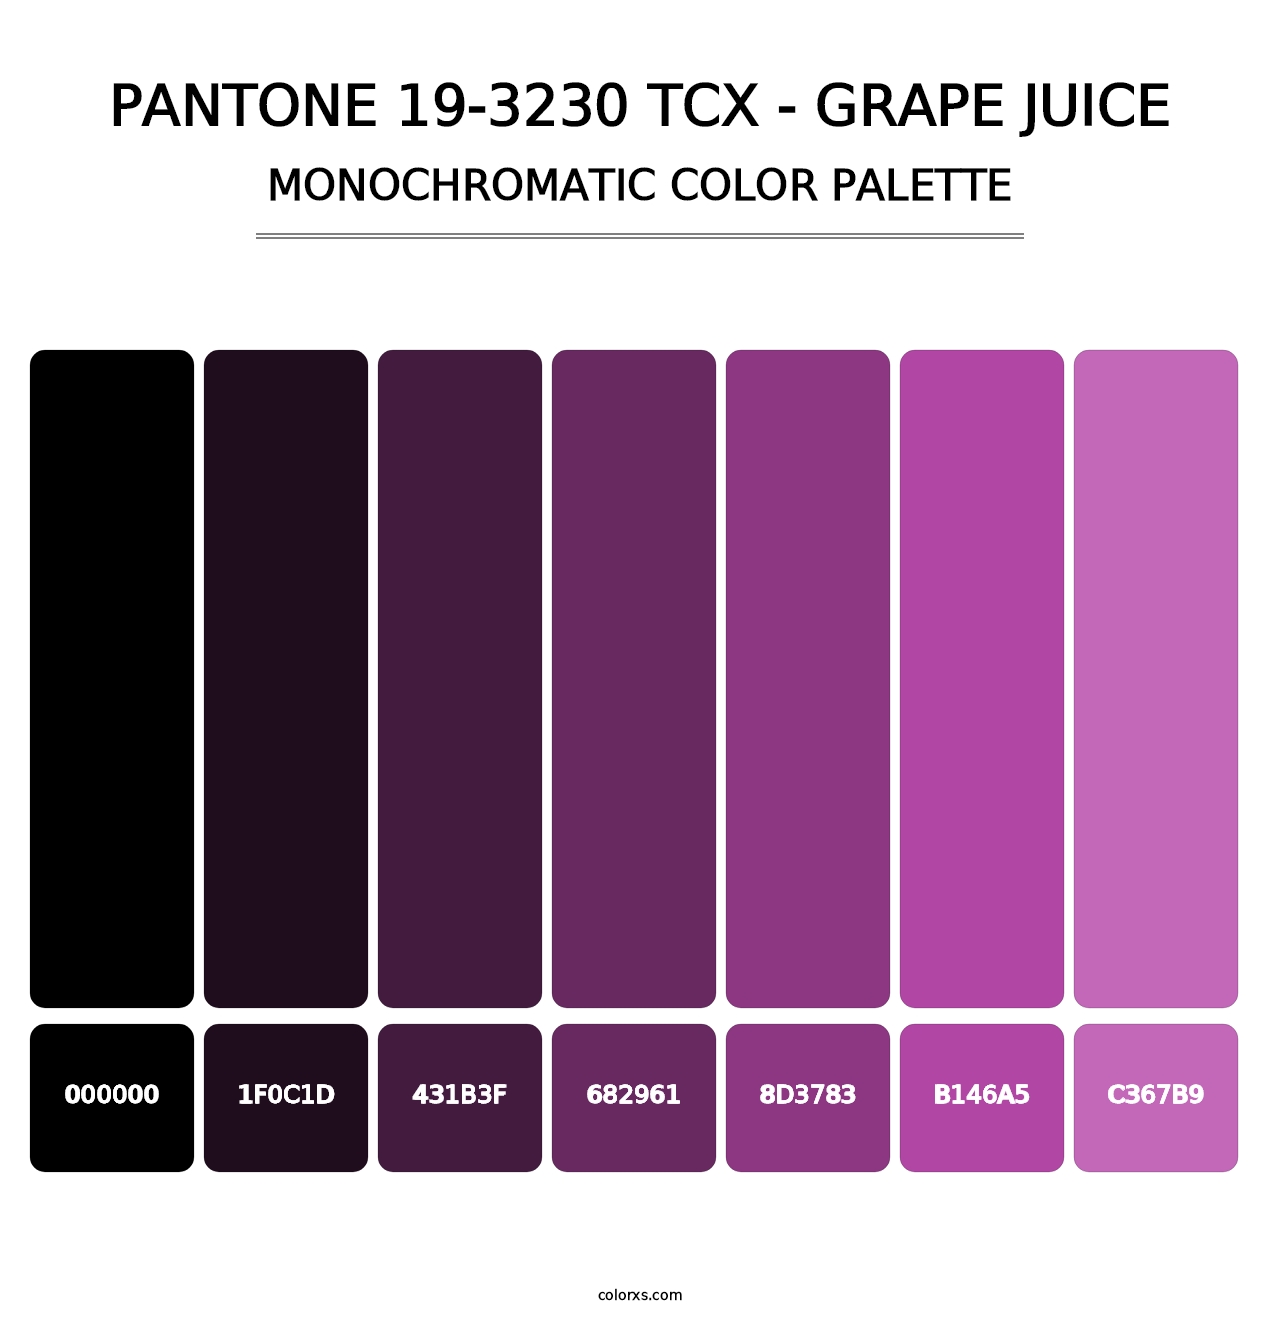 PANTONE 19-3230 TCX - Grape Juice - Monochromatic Color Palette